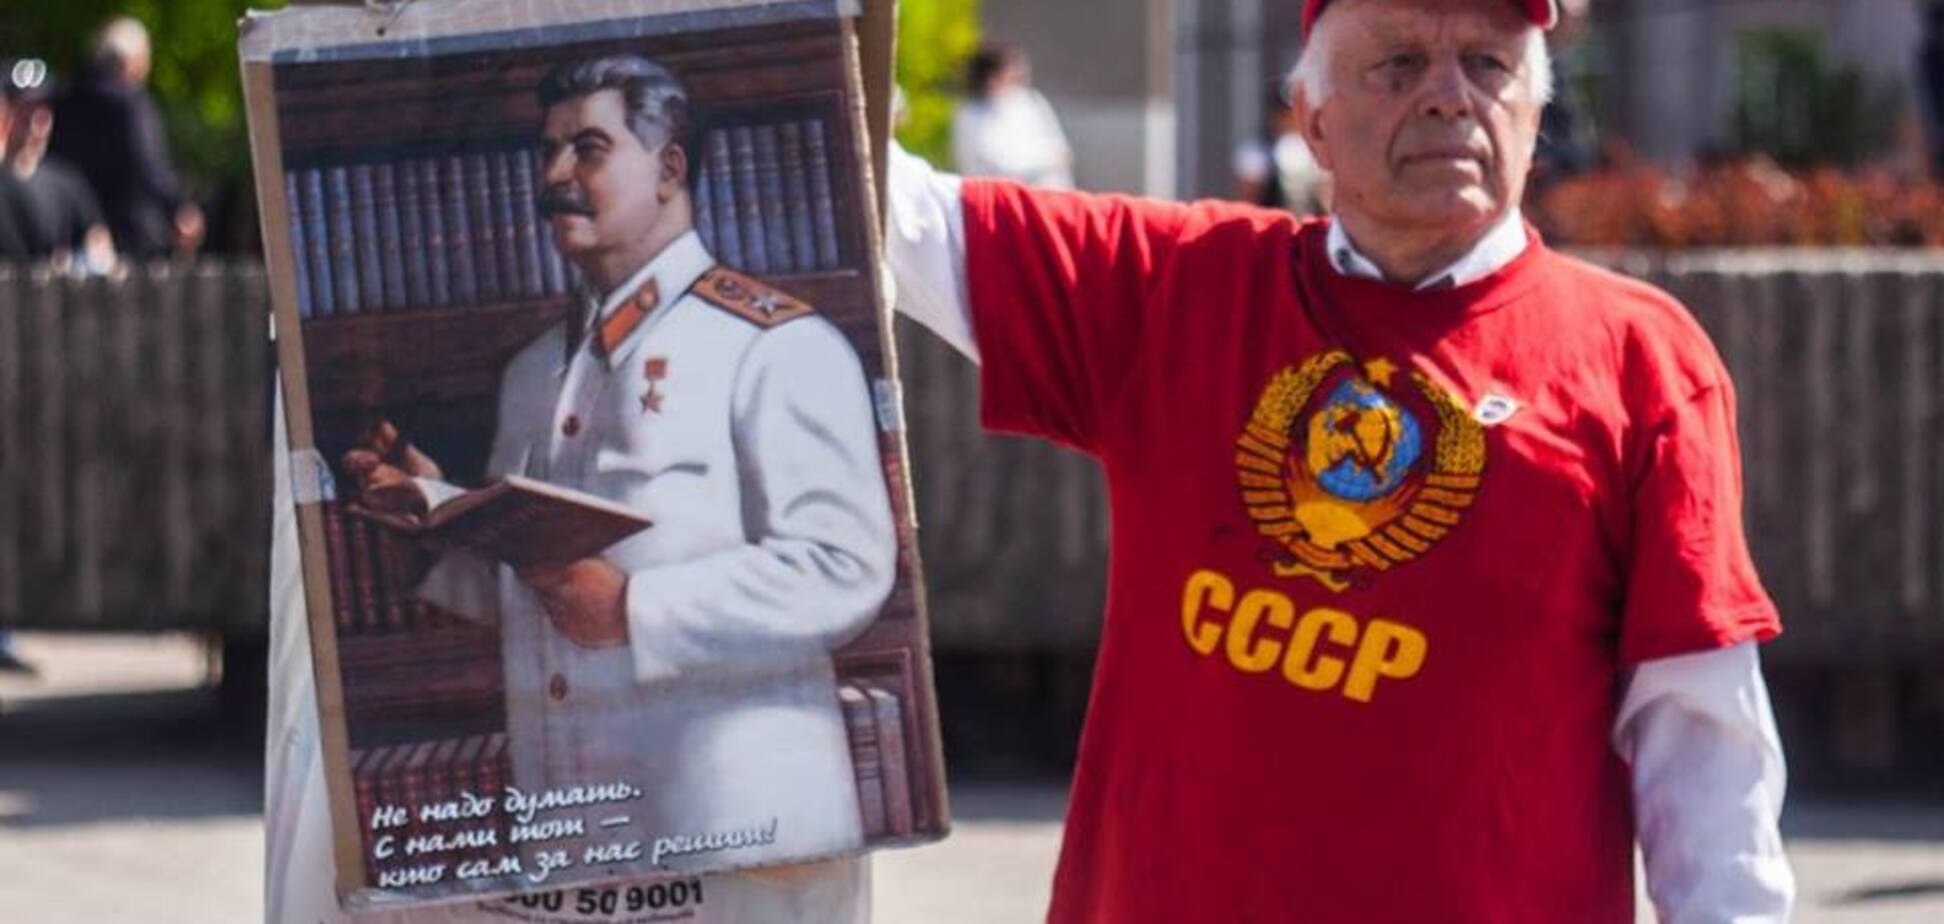 Цензоров можно поздравить: почему запретили фильм про Сталина?